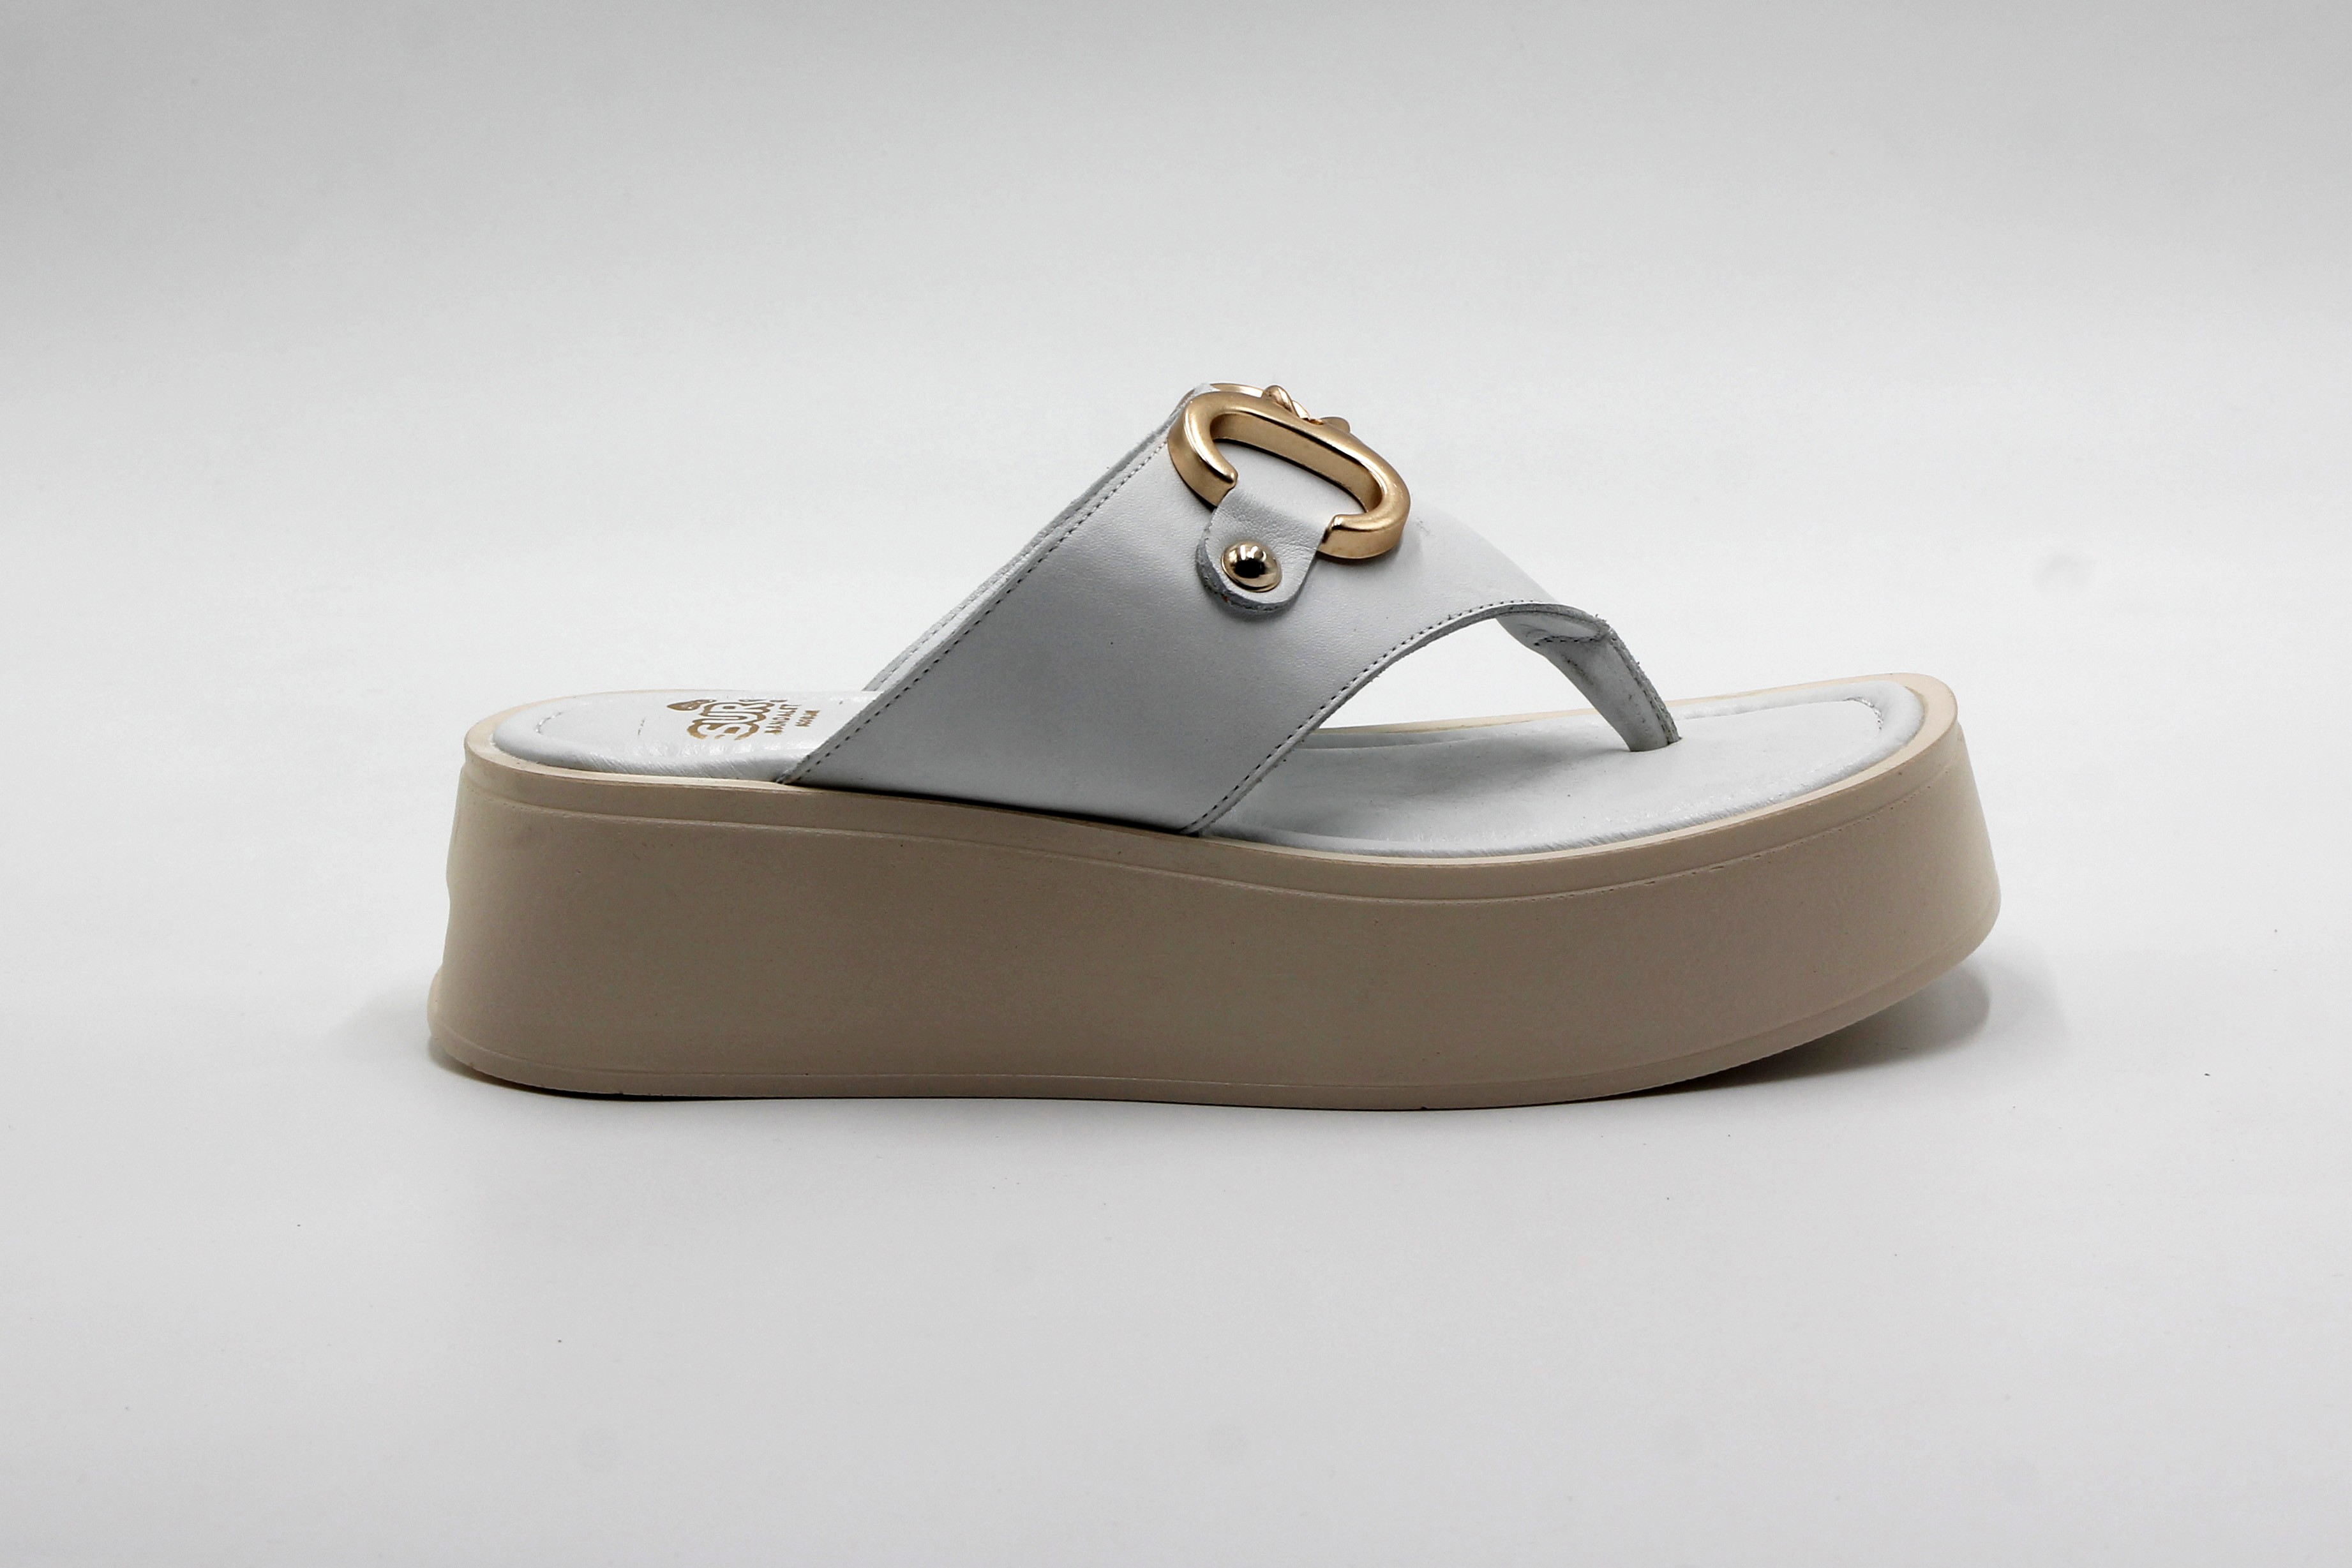 Sur Sandalet El Yapımı Kadın Dolgu Topuk Terlik - Beyaz